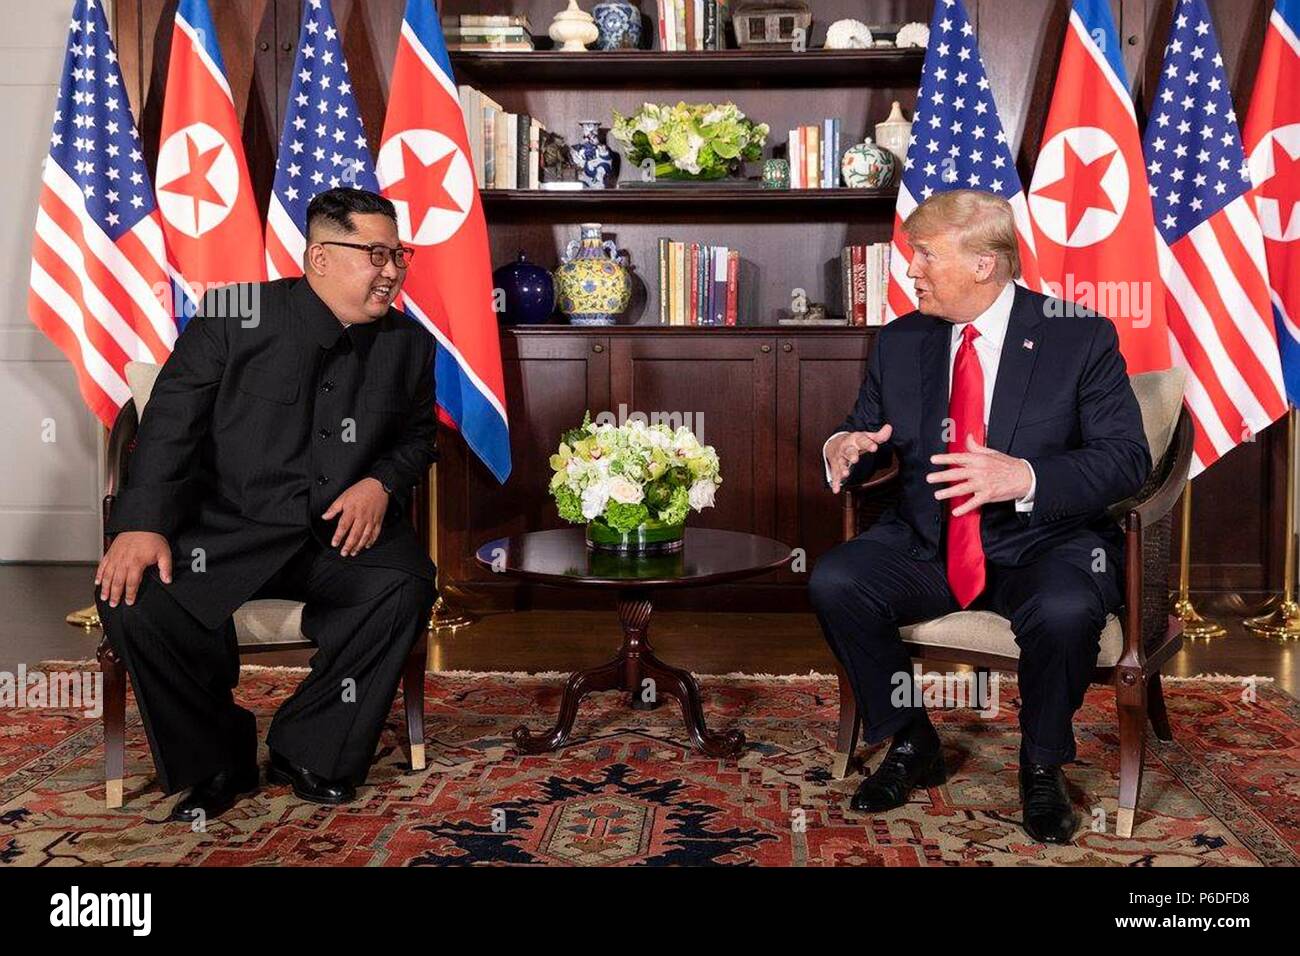 Le Président américain Donald Trump, droite, bavarde avec le dirigeant nord-coréen Kim Jong Un avant le début de leur réunion bilatérale à la Capella resort 12 Juin, 2018 dans l'île de Sentosa, Singapour. Banque D'Images